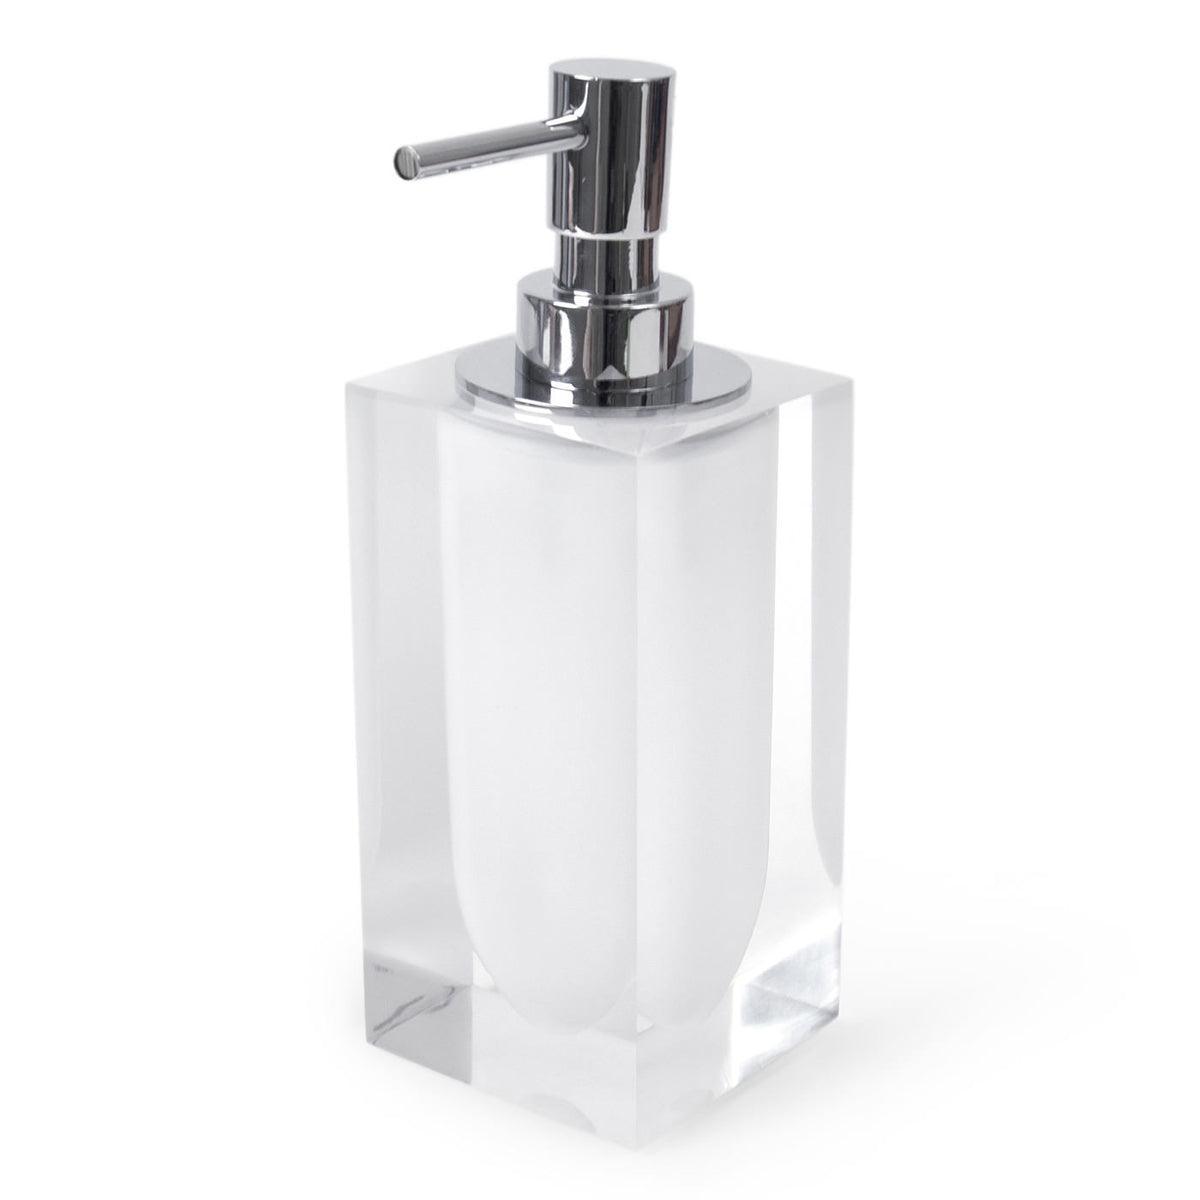 Jonathan Adler - Hollywood Soap Dispenser - 11112 | Montreal Lighting & Hardware